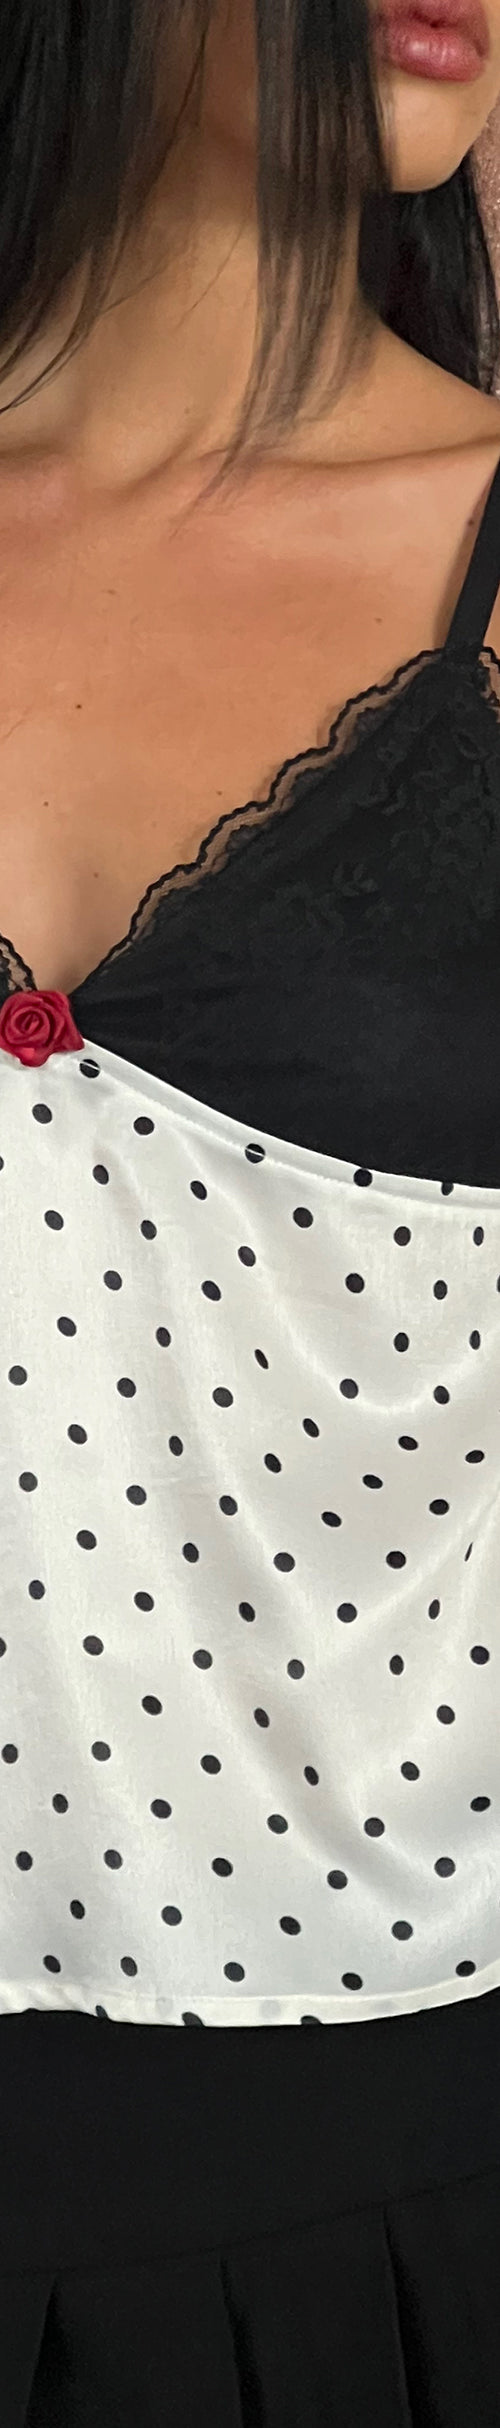 Image of Dalinda Cami Top in Black and White Polka Dot Satin